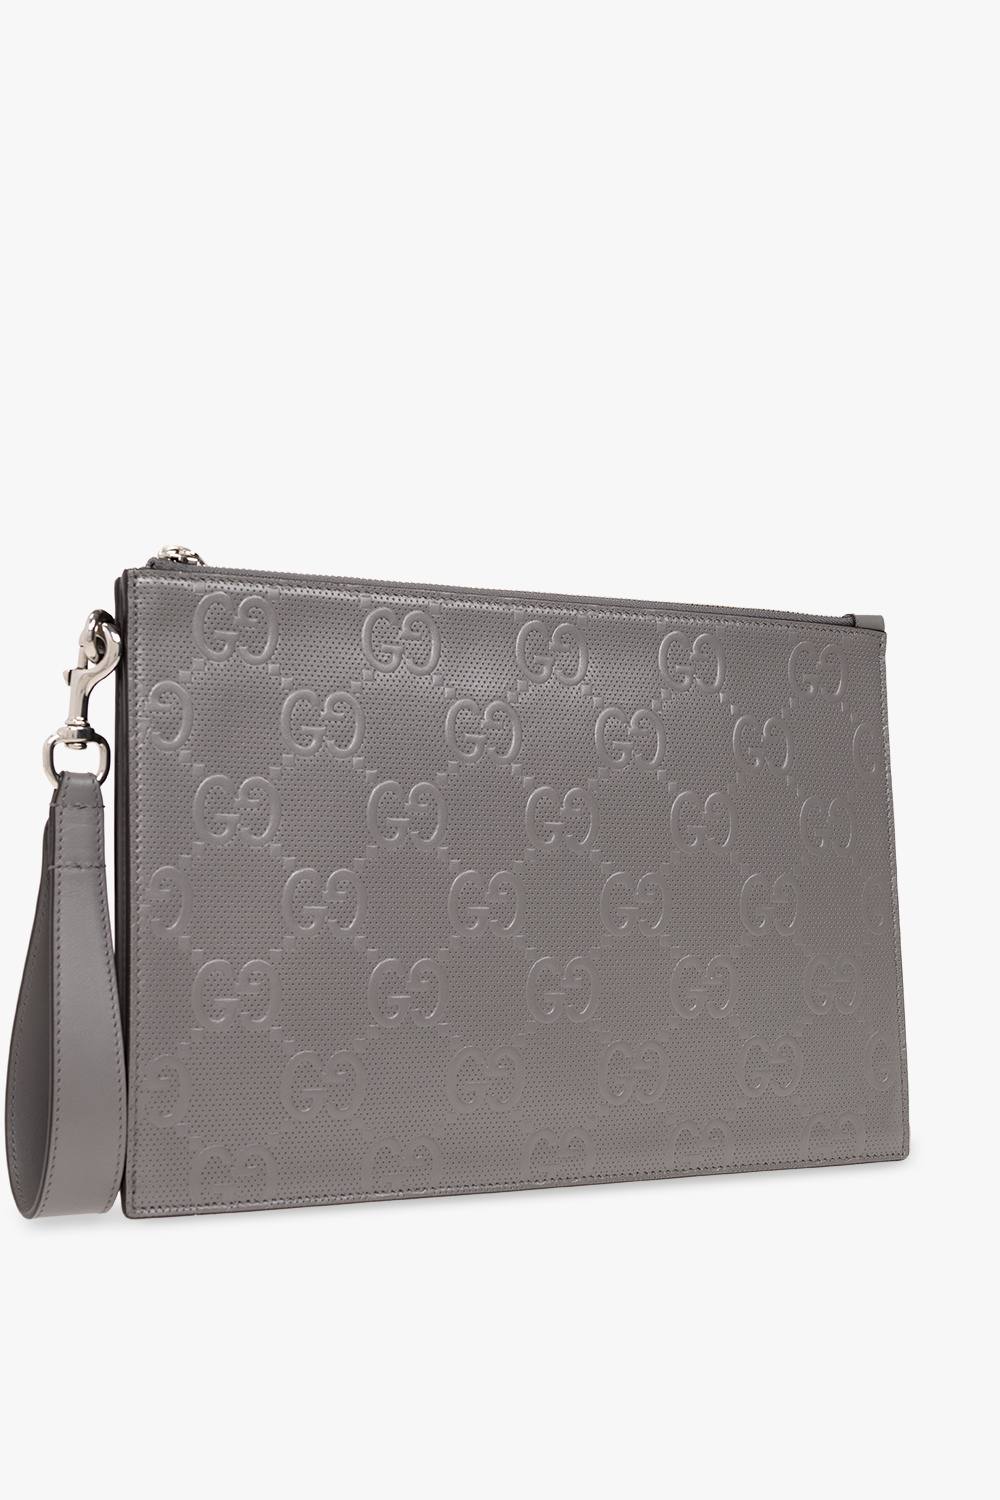 IetpShops GB - Grey Handbag with monogram Gucci Mens - You can buy